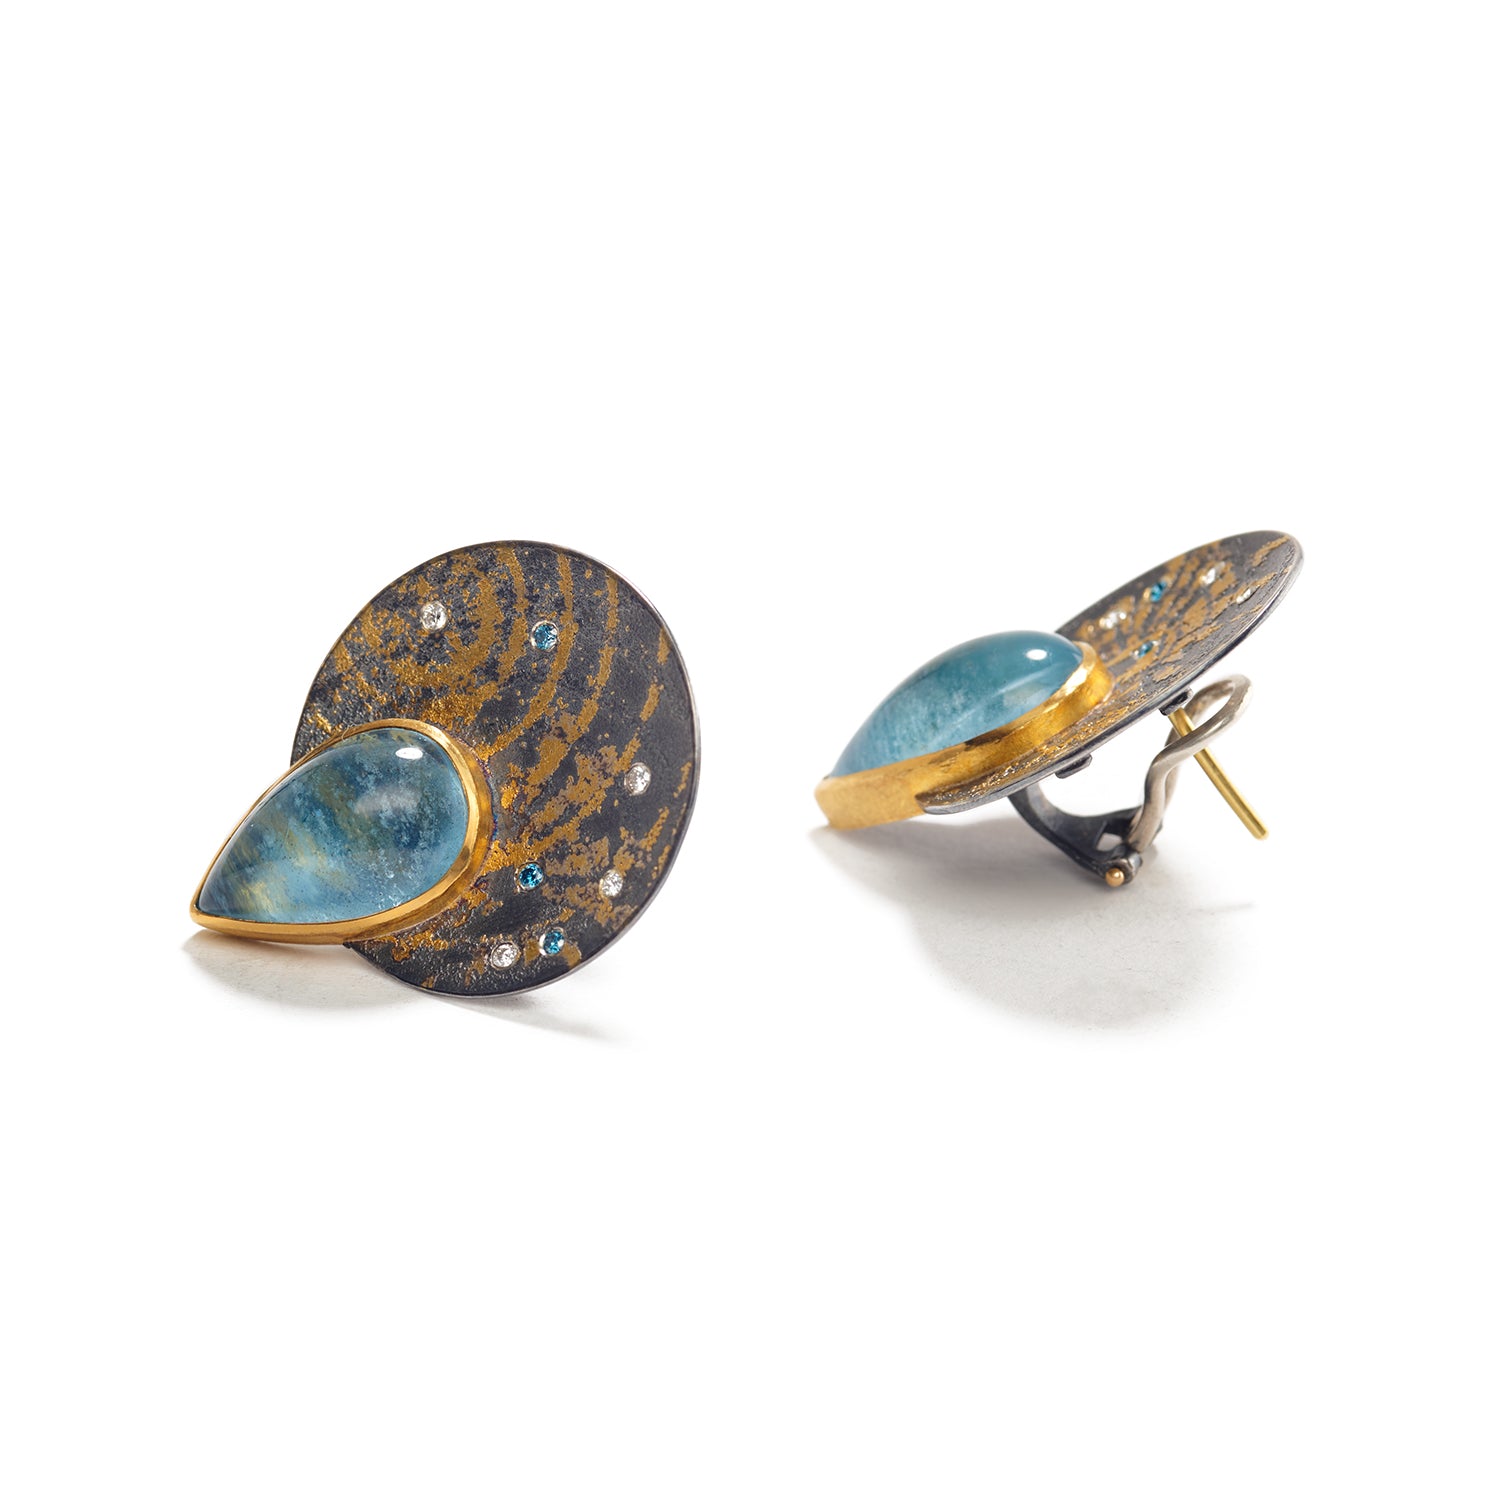 Teardrop Aquamarine and Diamond Earrings